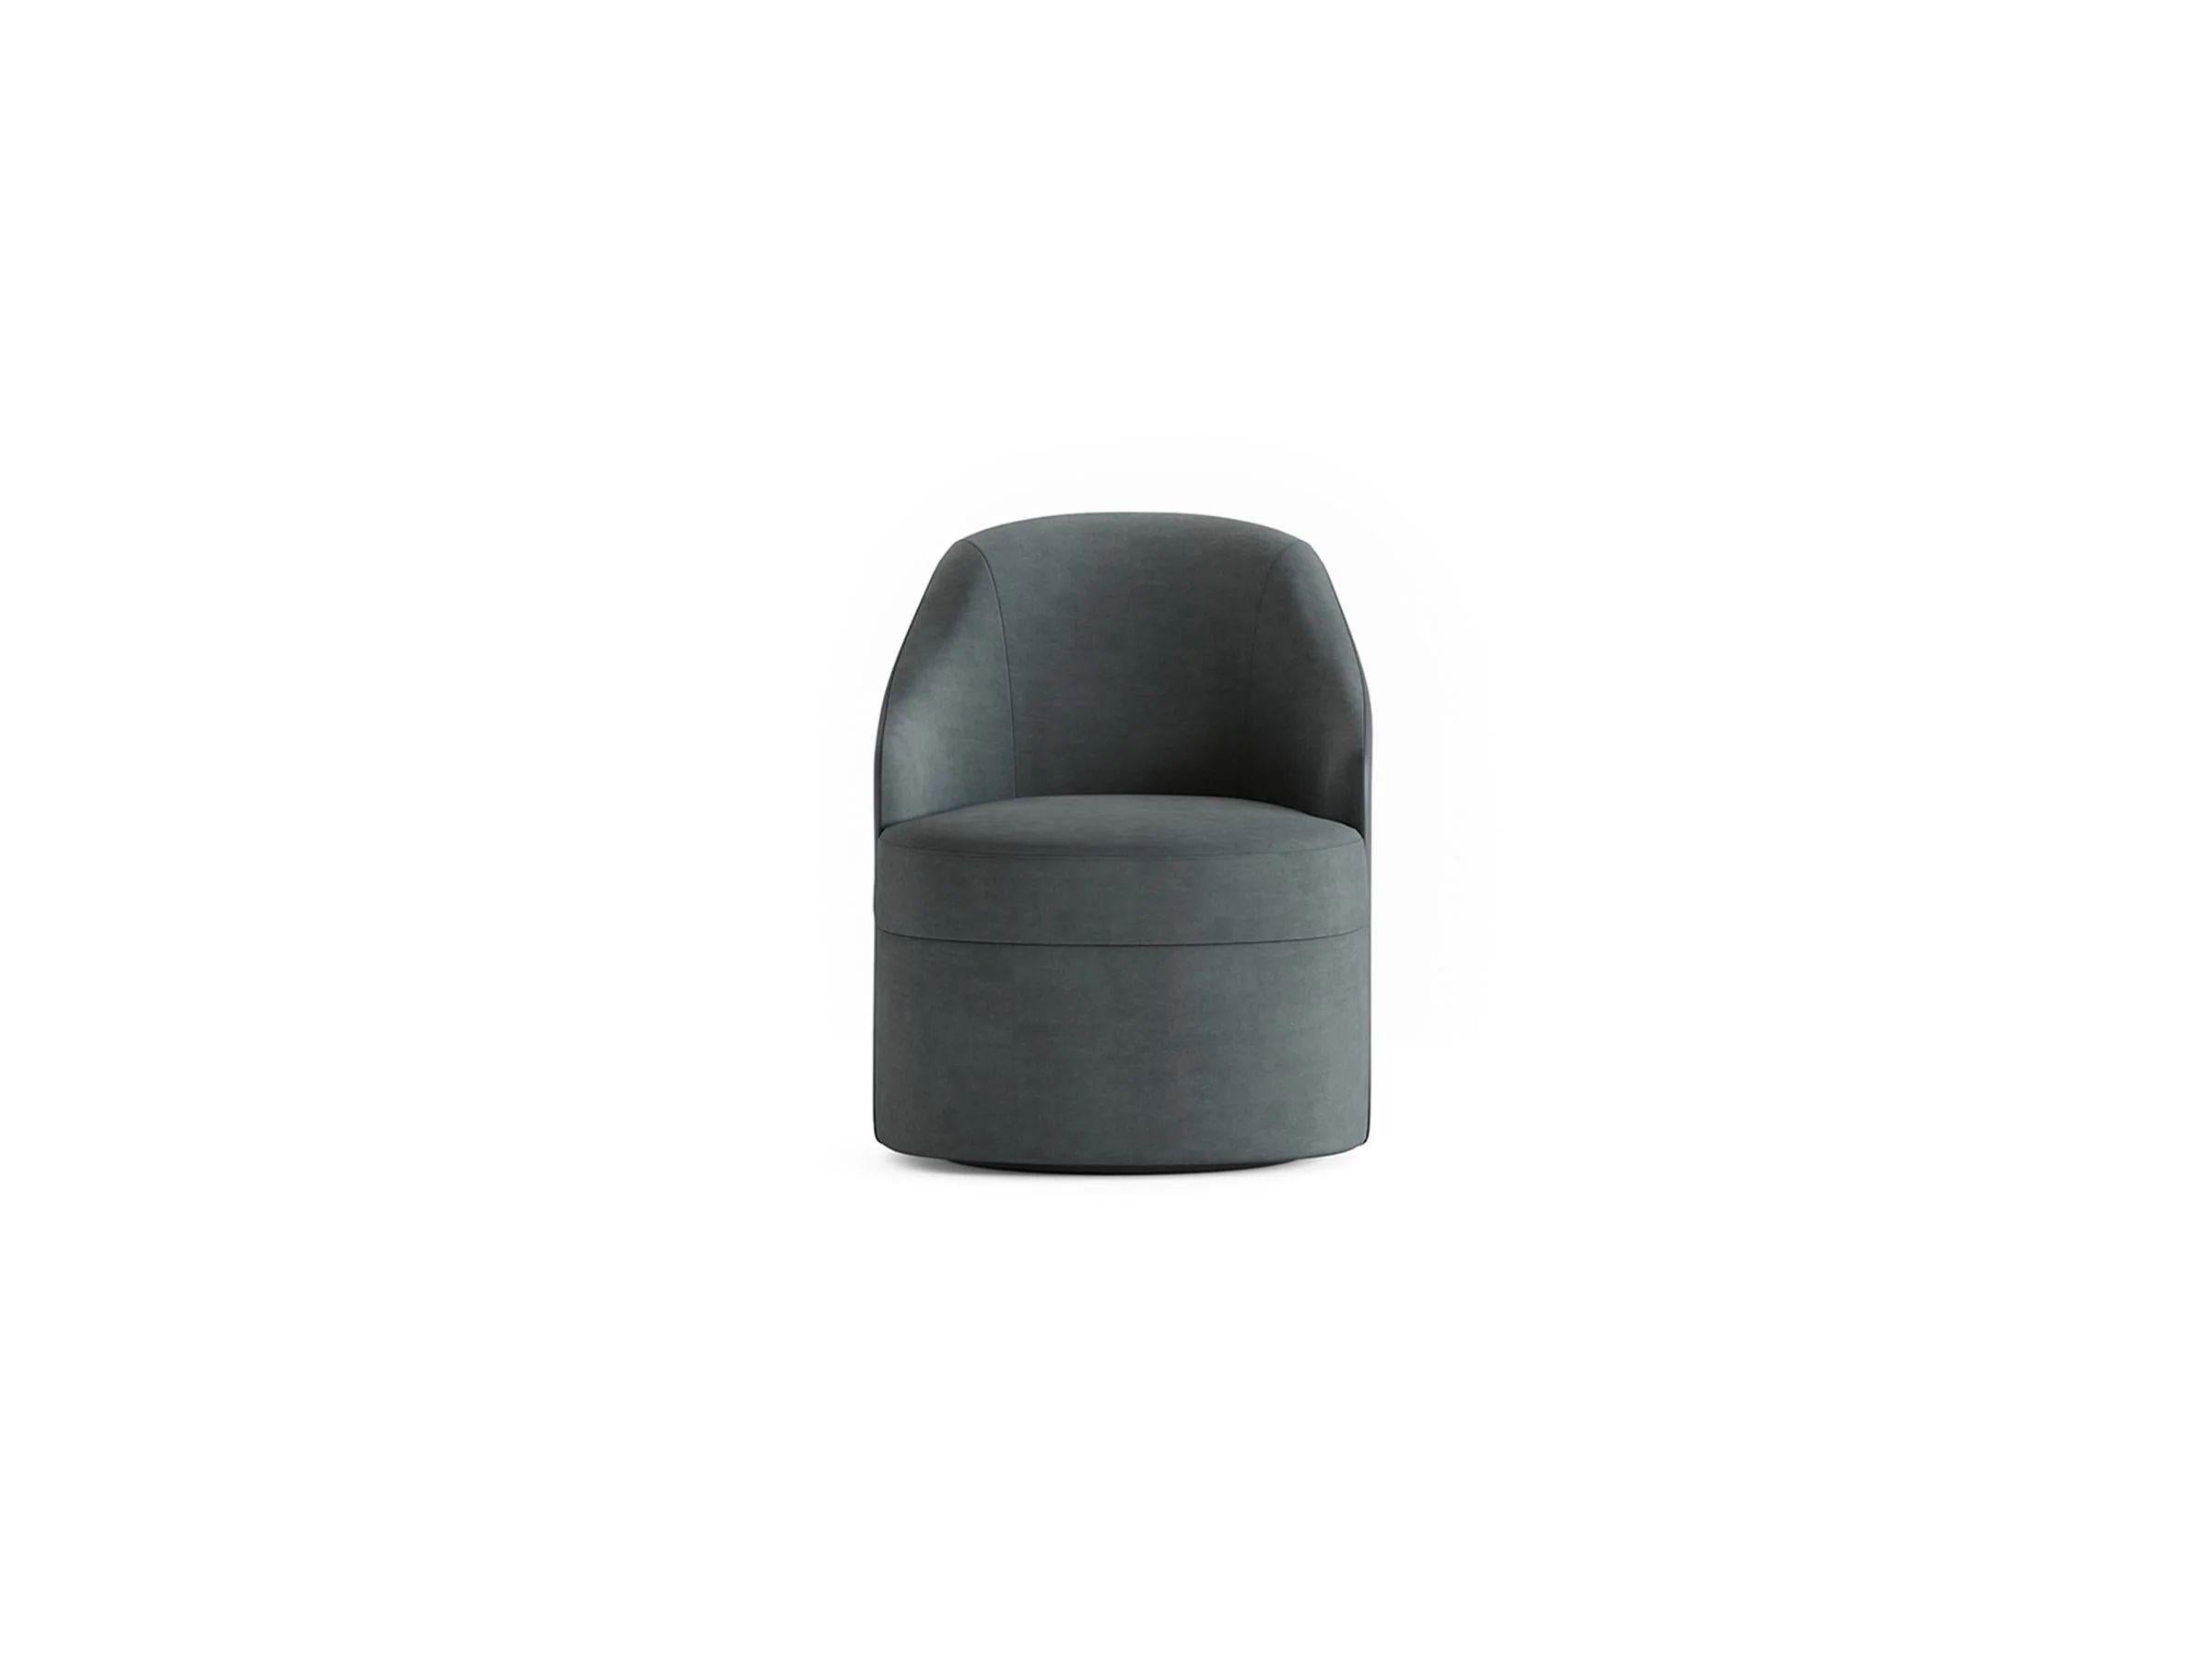 Aufbauend auf dem klassischen Design des Sessels TOLINA werden Stoffdetails und warme Holztöne verwendet, um die Metallbeine zu bedecken, wodurch ein reiches, ganzheitliches Erscheinungsbild entsteht. Die funktionalen, drehbaren Beine ermöglichen es